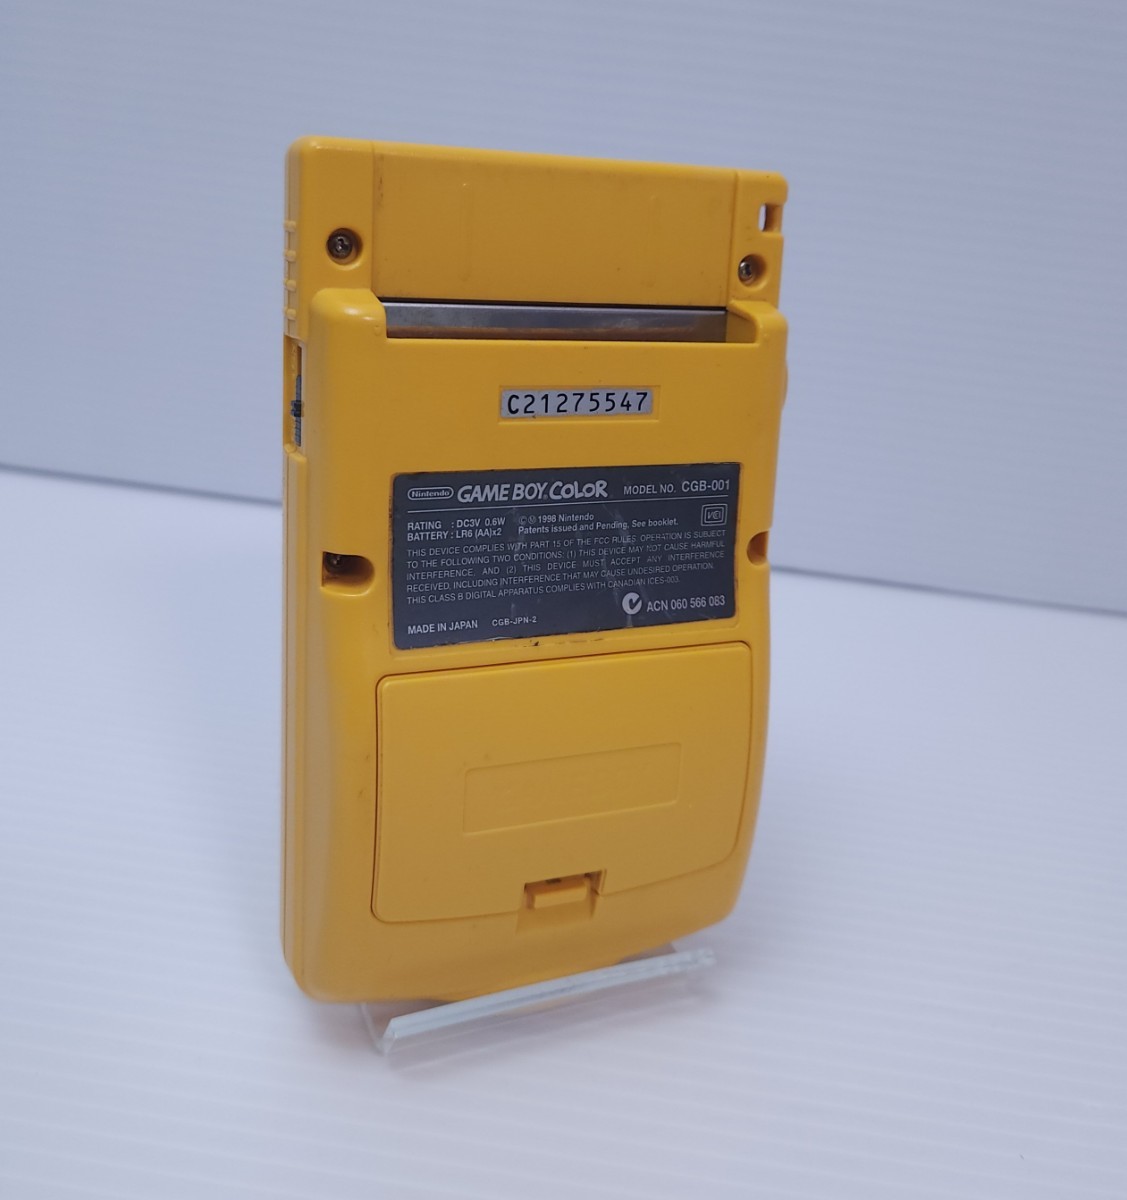  прекрасный товар / рабочий товар Nintendo GAME BOY COLOR Nintendo Game Boy цвет корпус CGB-001 желтый (212)